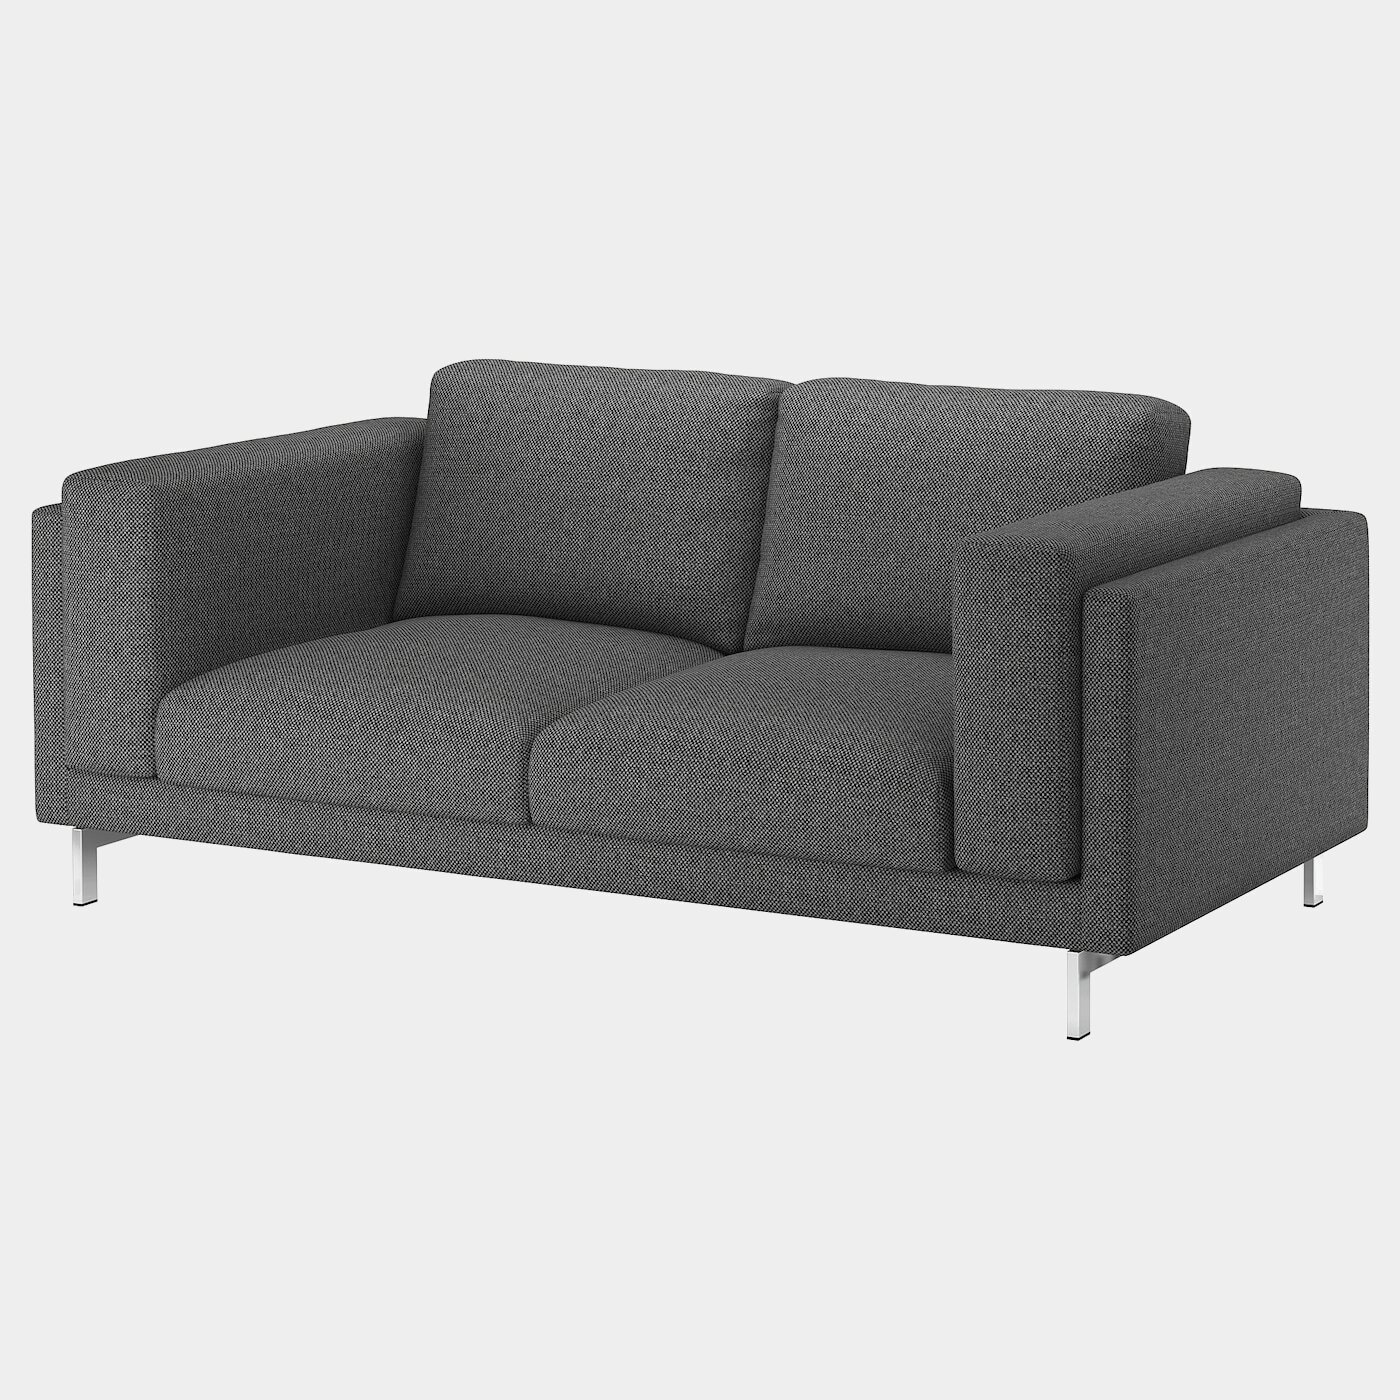 NOCKEBY Bezug 2er-Sofa  - extra Bezüge - Möbel Ideen für dein Zuhause von Home Trends. Möbel Trends von Social Media Influencer für dein Skandi Zuhause.